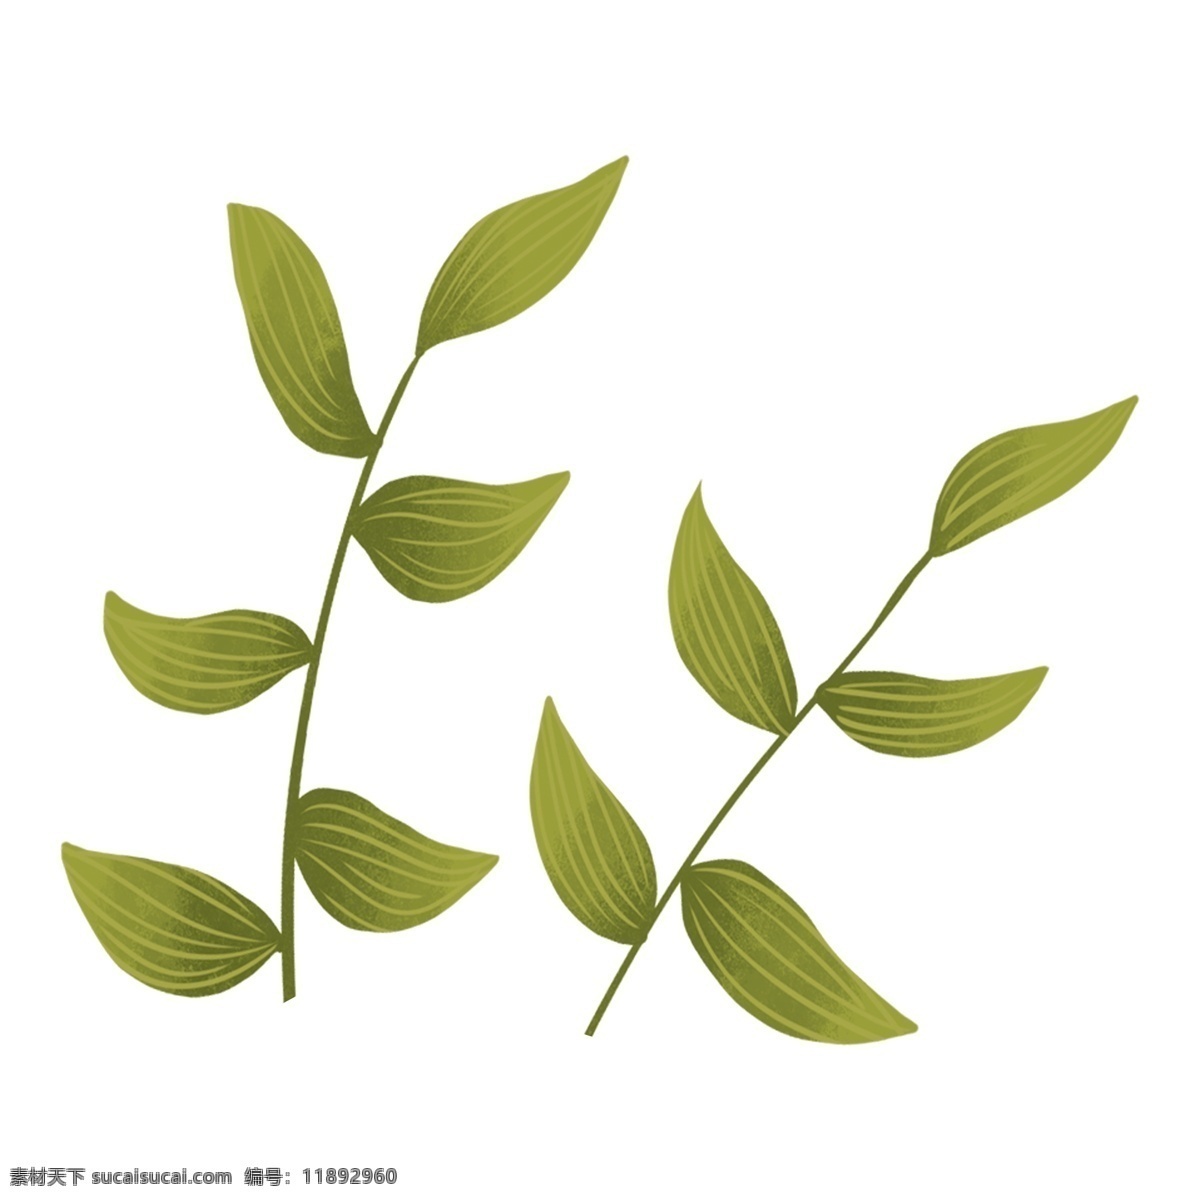 手绘 插画 绿叶 植物 手绘插画 植物素材 叶子 png元素 装饰图案